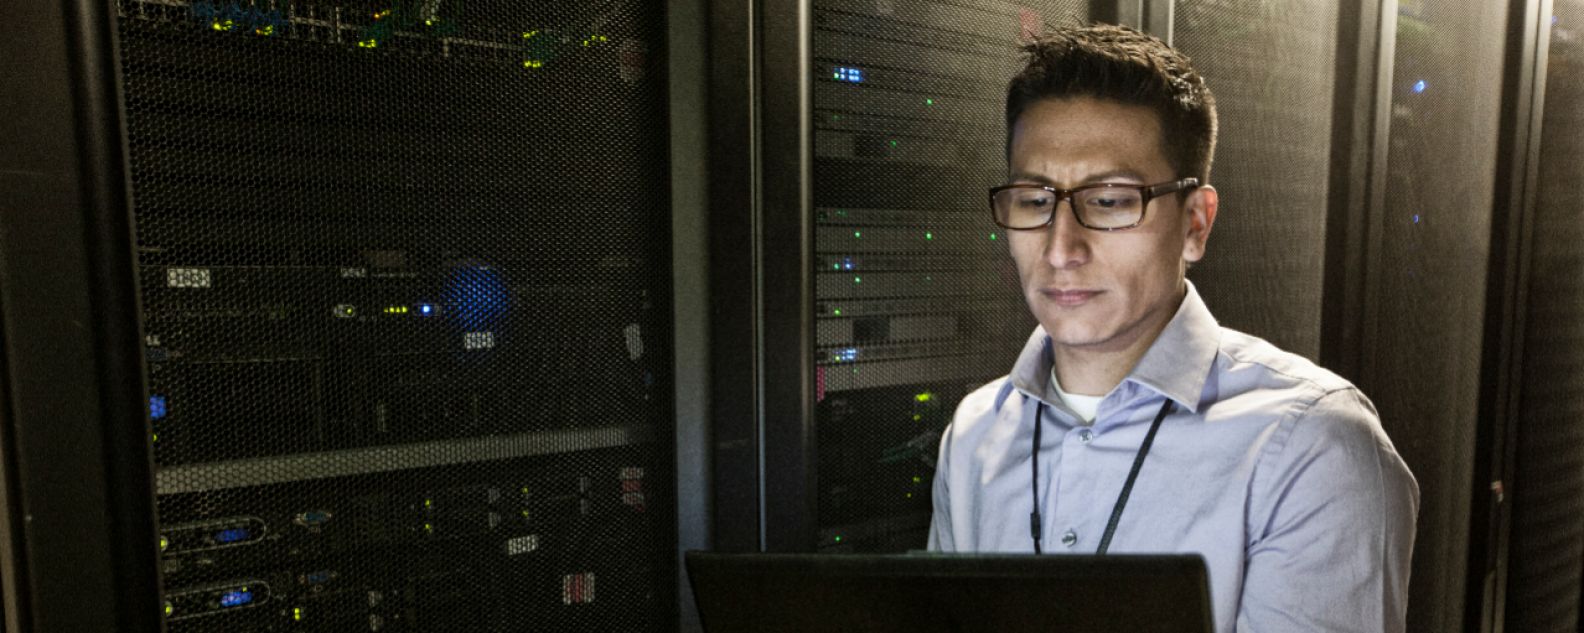 コンピューター・サーバーに診断テストを行っている技術者の画像